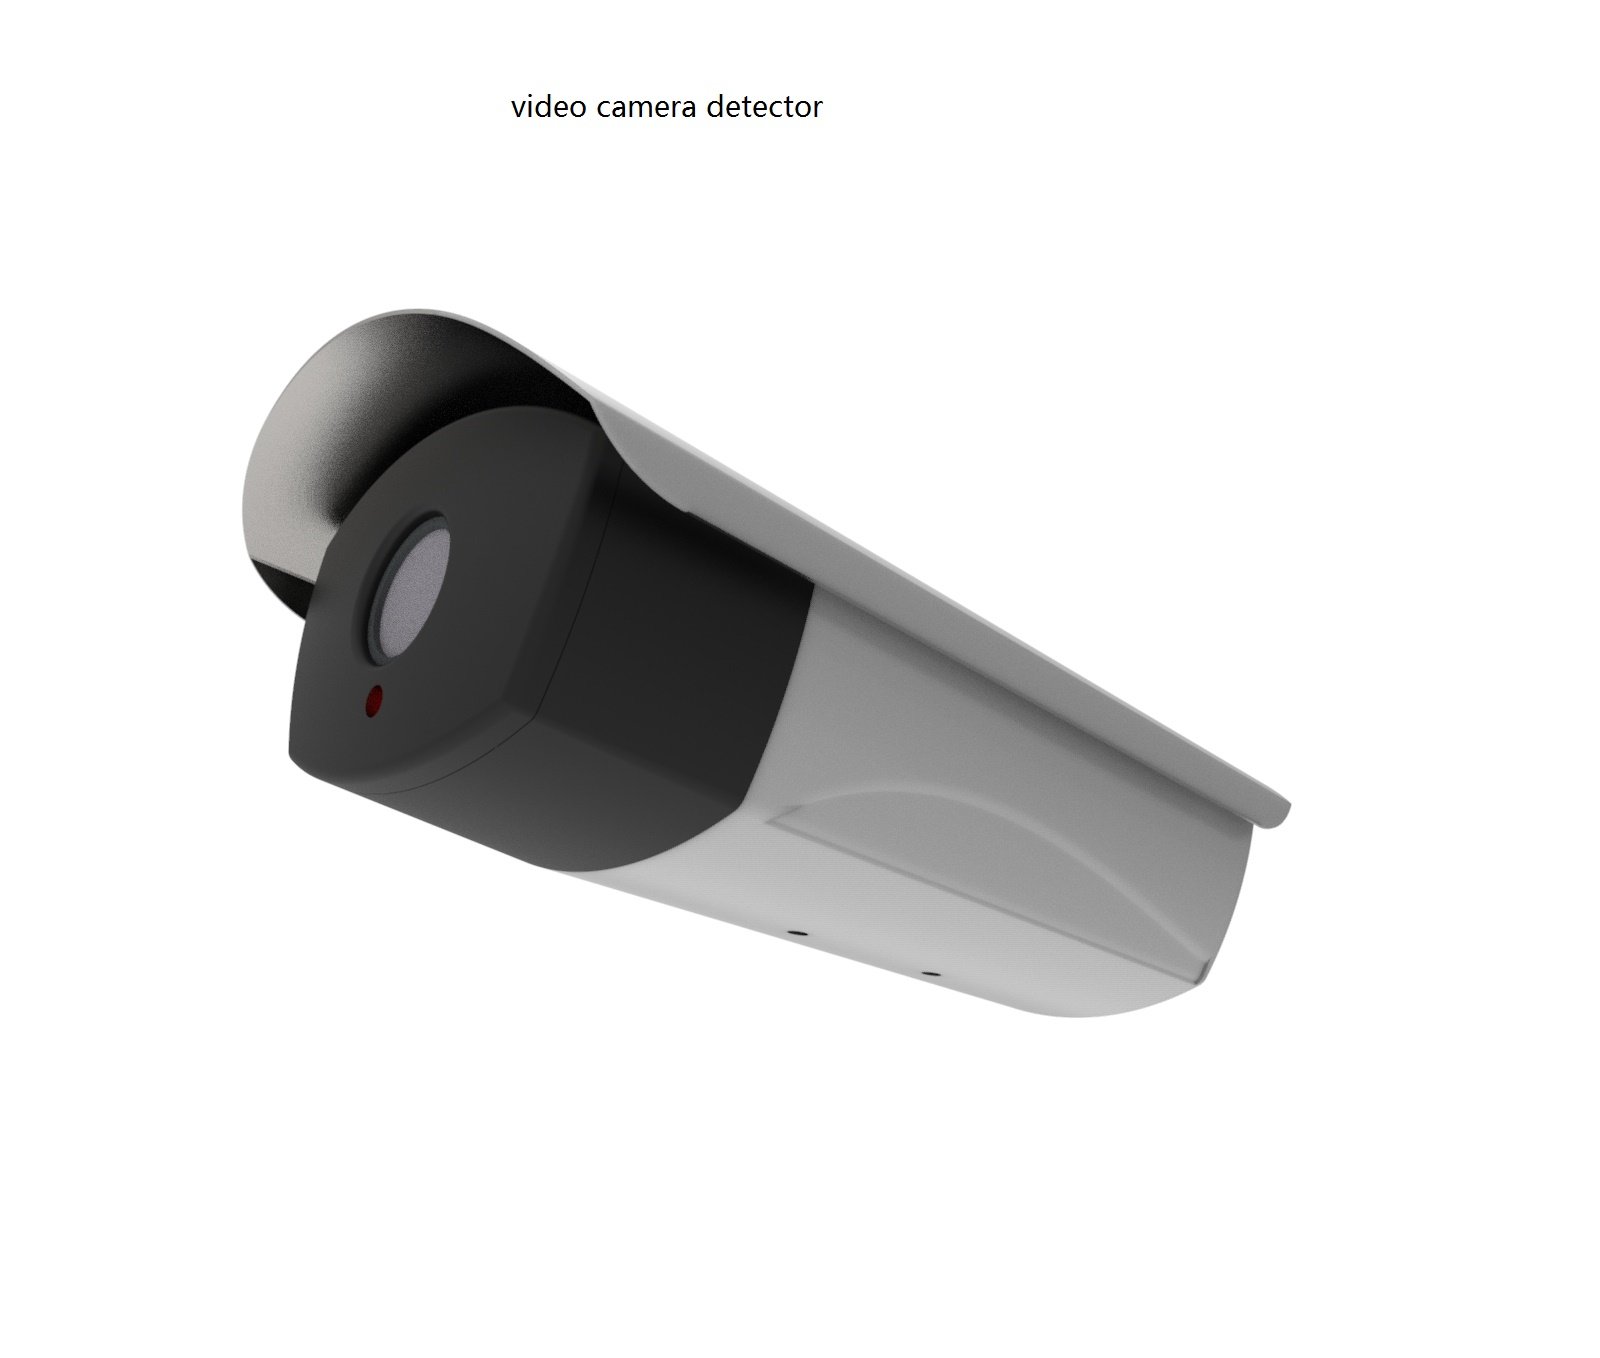 Sensor Kamera Nirkabel Dengan Deteksi Kamera Video Pemasok Cina